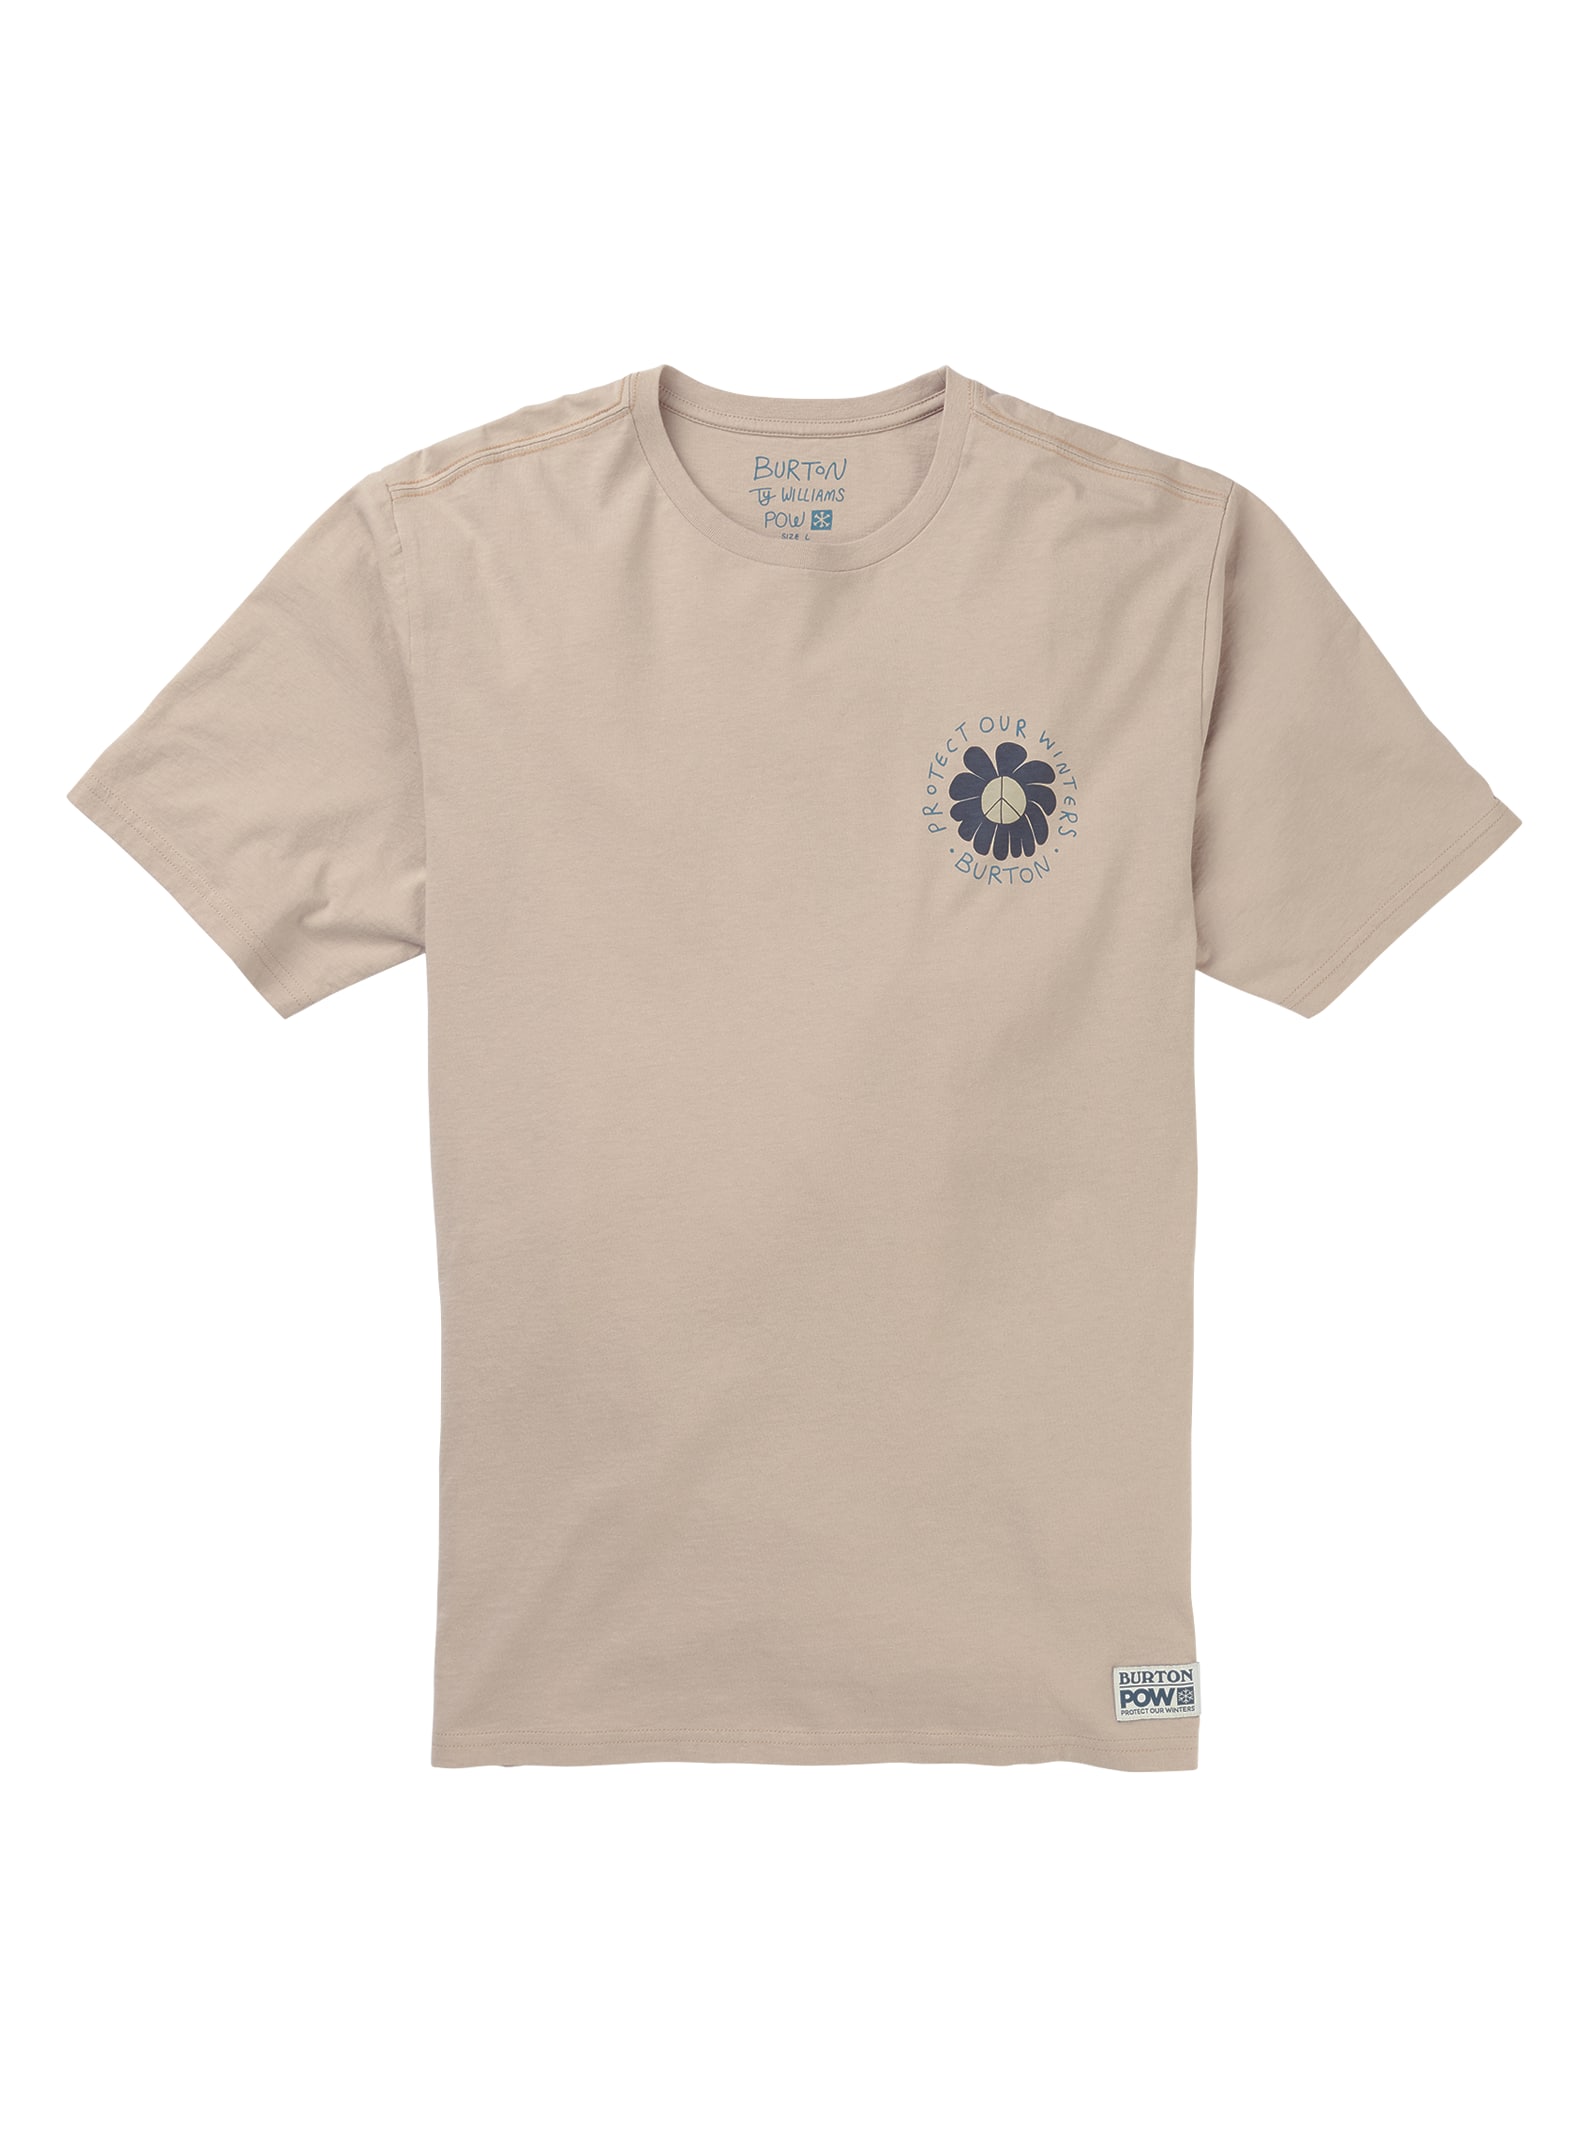 Burton x POW x Ty Williams Short Sleeve T-Shirt | Burton.com Spring /  Summer 2019 US